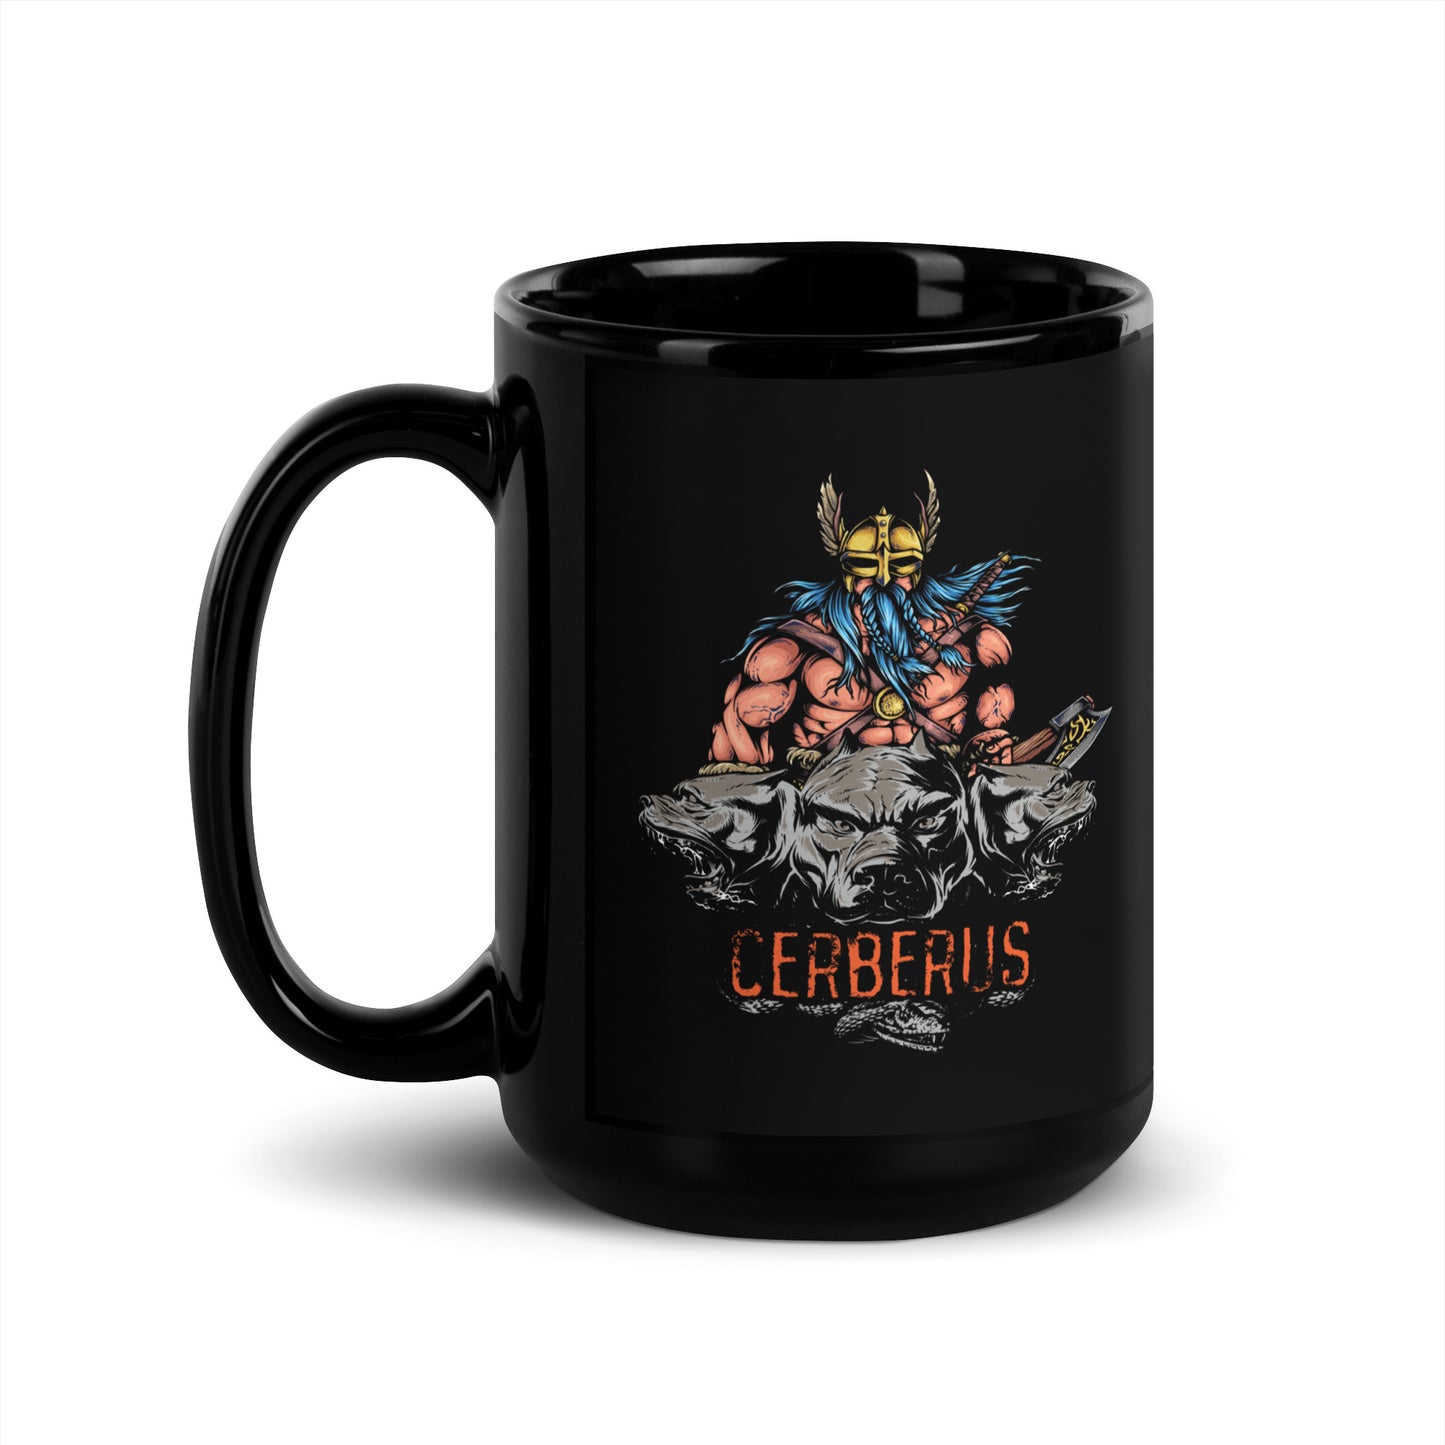 Cerberus Coffee Mug